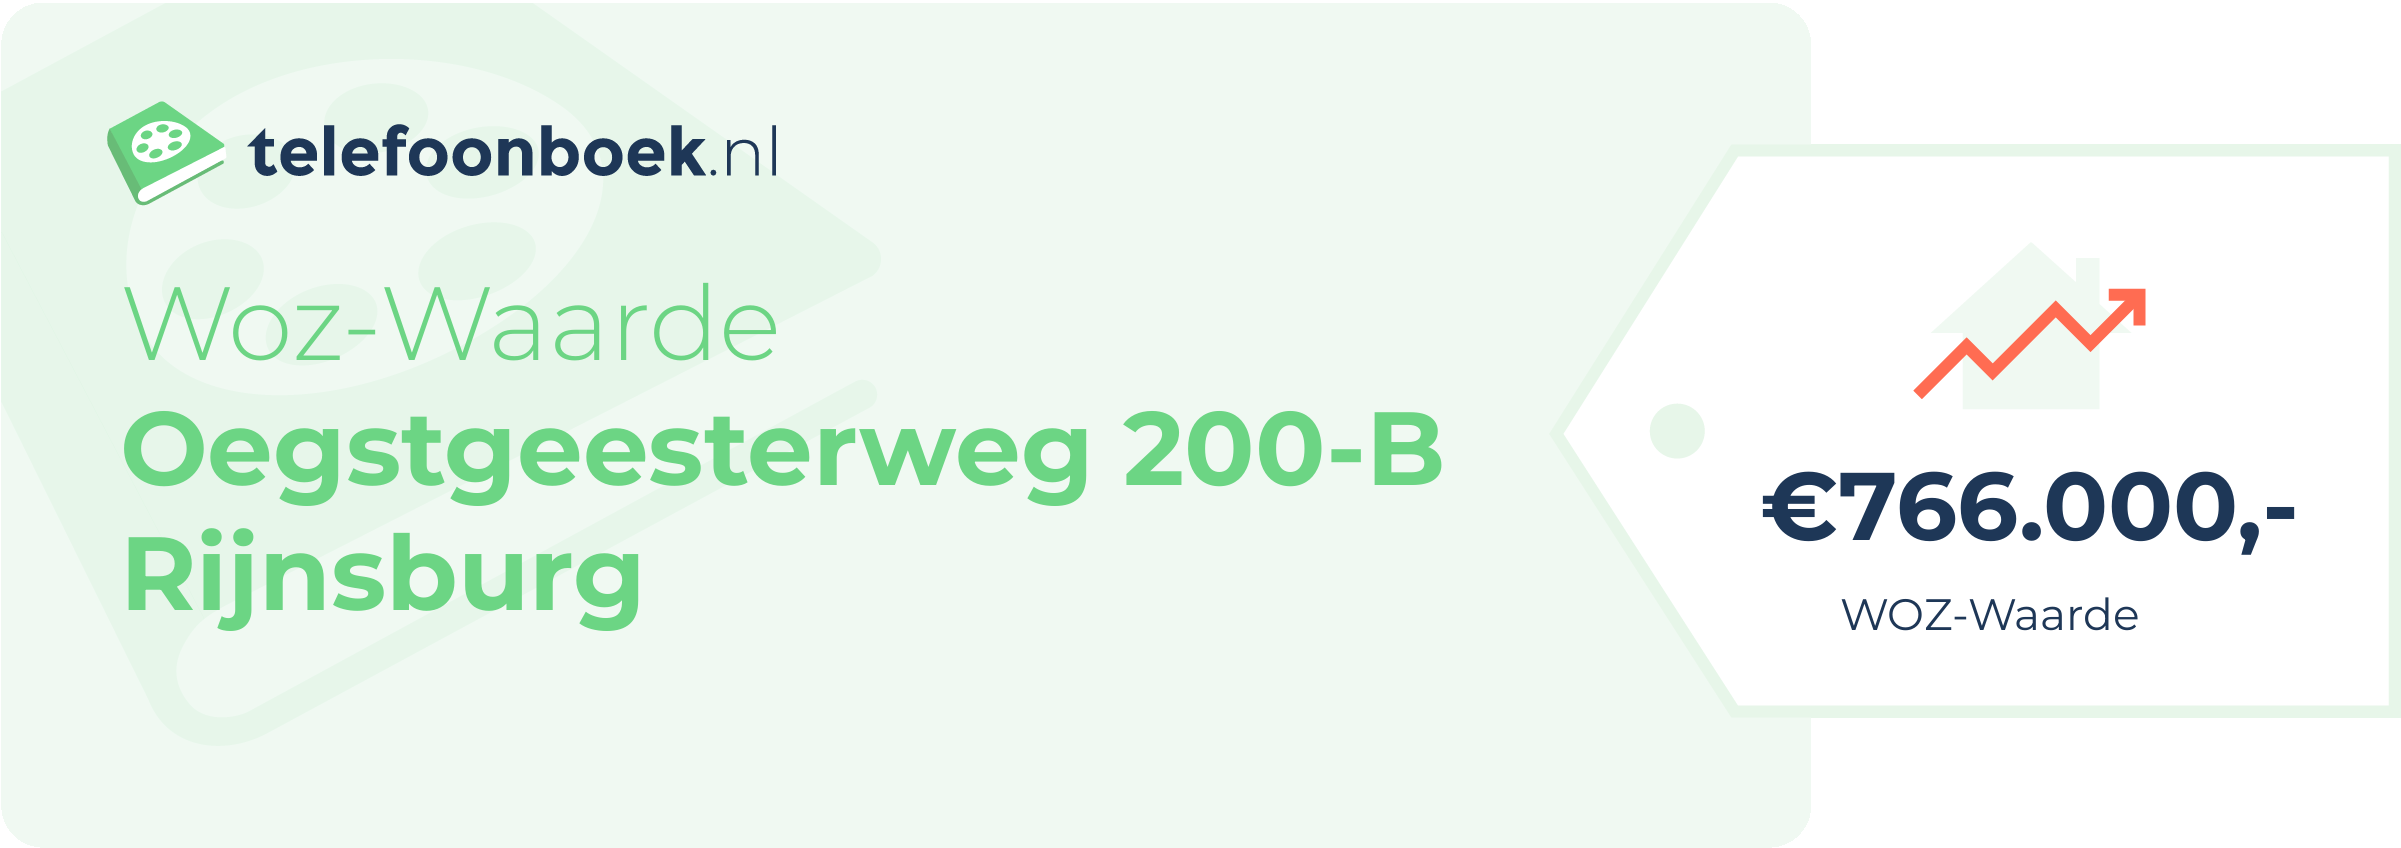 WOZ-waarde Oegstgeesterweg 200-B Rijnsburg